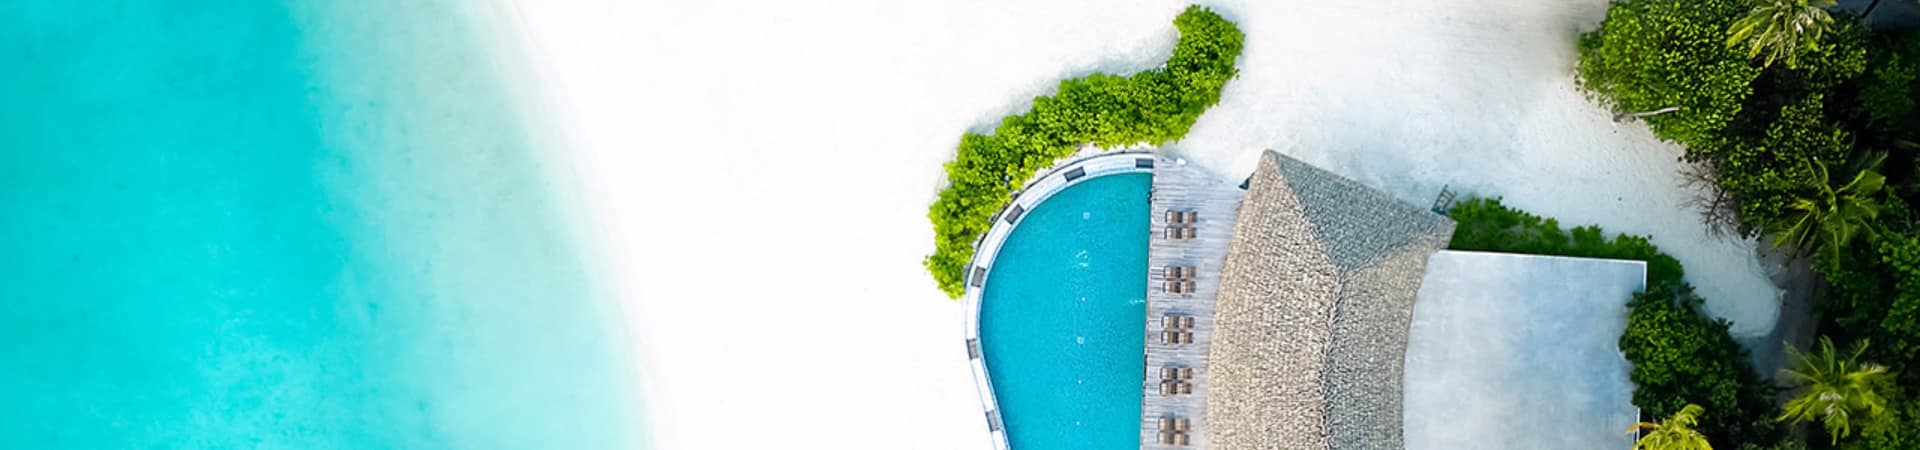 Le meridien maldives vista aerea piscina